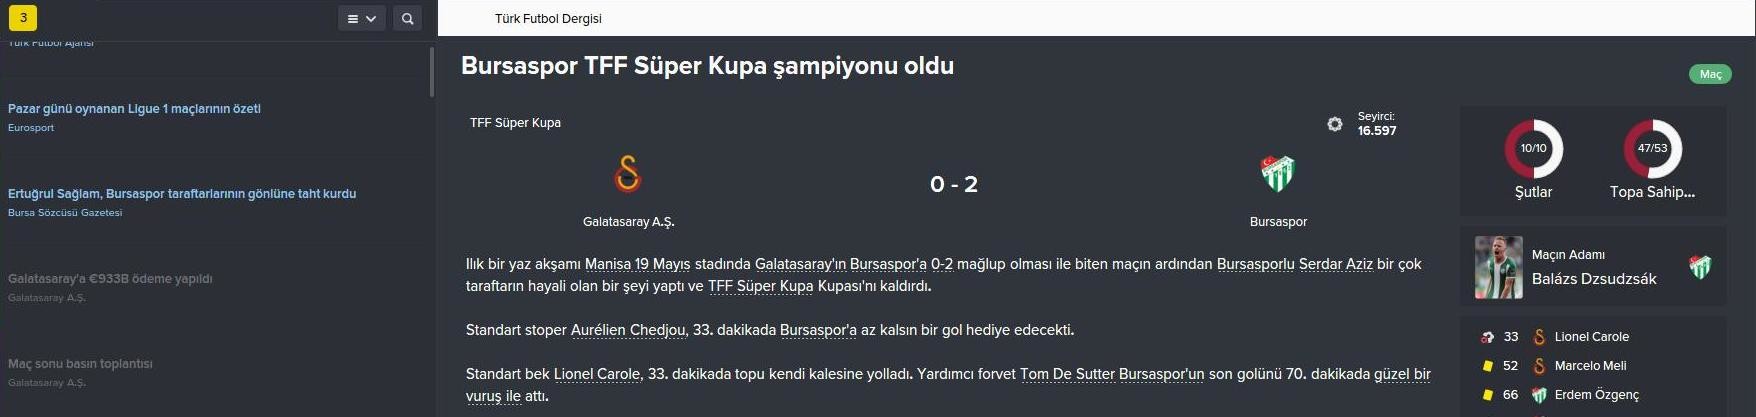  FM 2016 Galatasaray Kariyeri  -Yine yeniden- (3. sezon basladi)